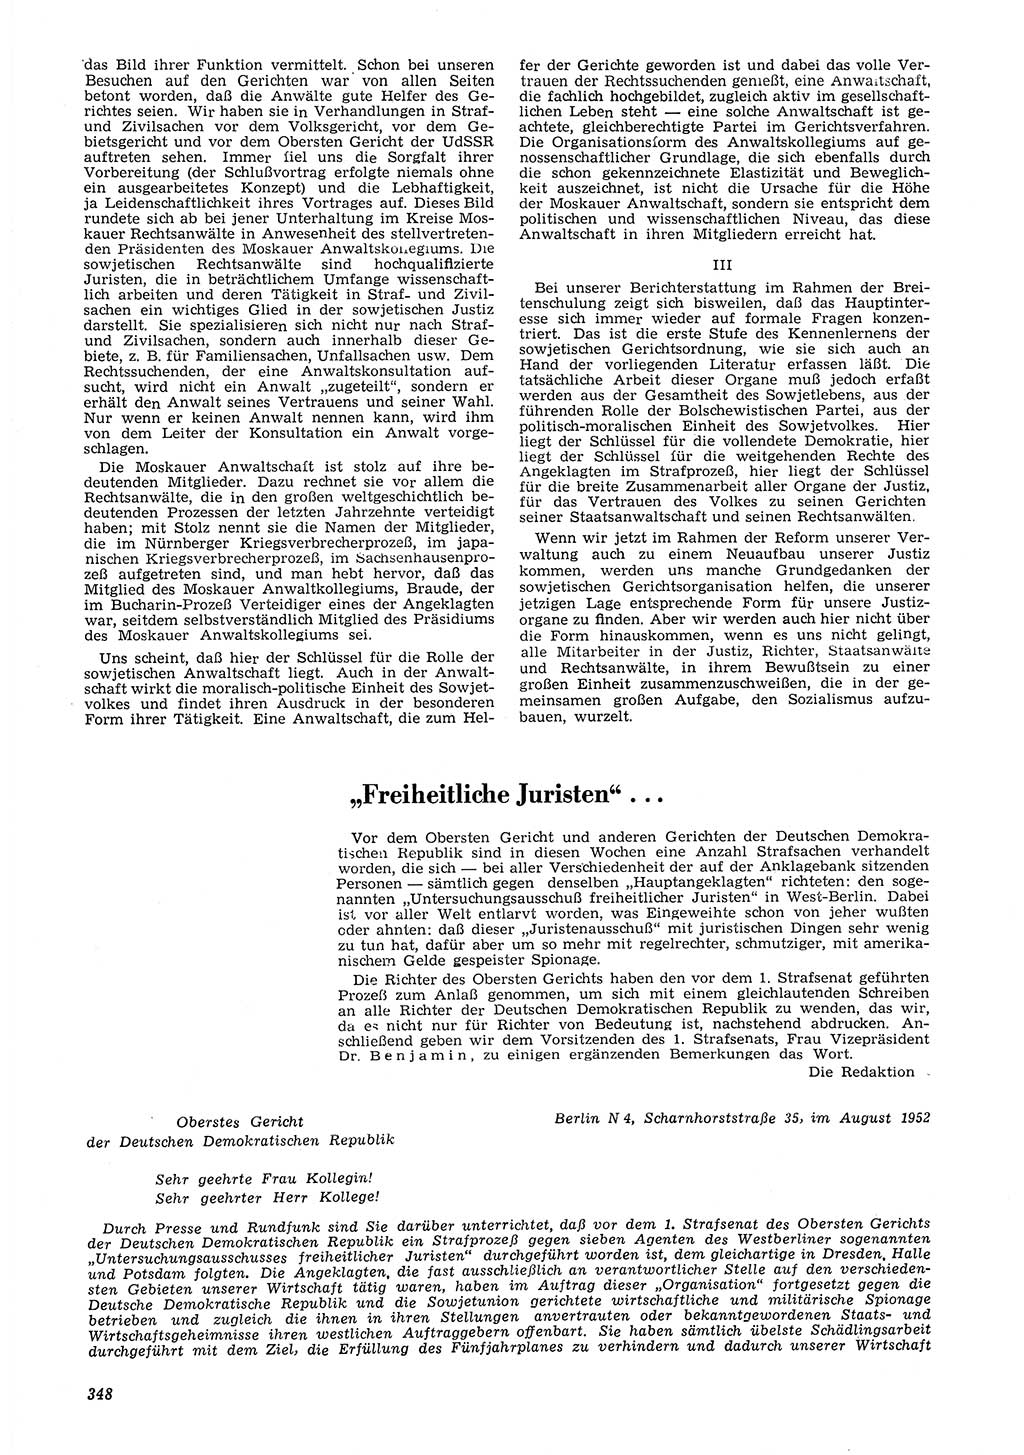 Neue Justiz (NJ), Zeitschrift für Recht und Rechtswissenschaft [Deutsche Demokratische Republik (DDR)], 6. Jahrgang 1952, Seite 348 (NJ DDR 1952, S. 348)